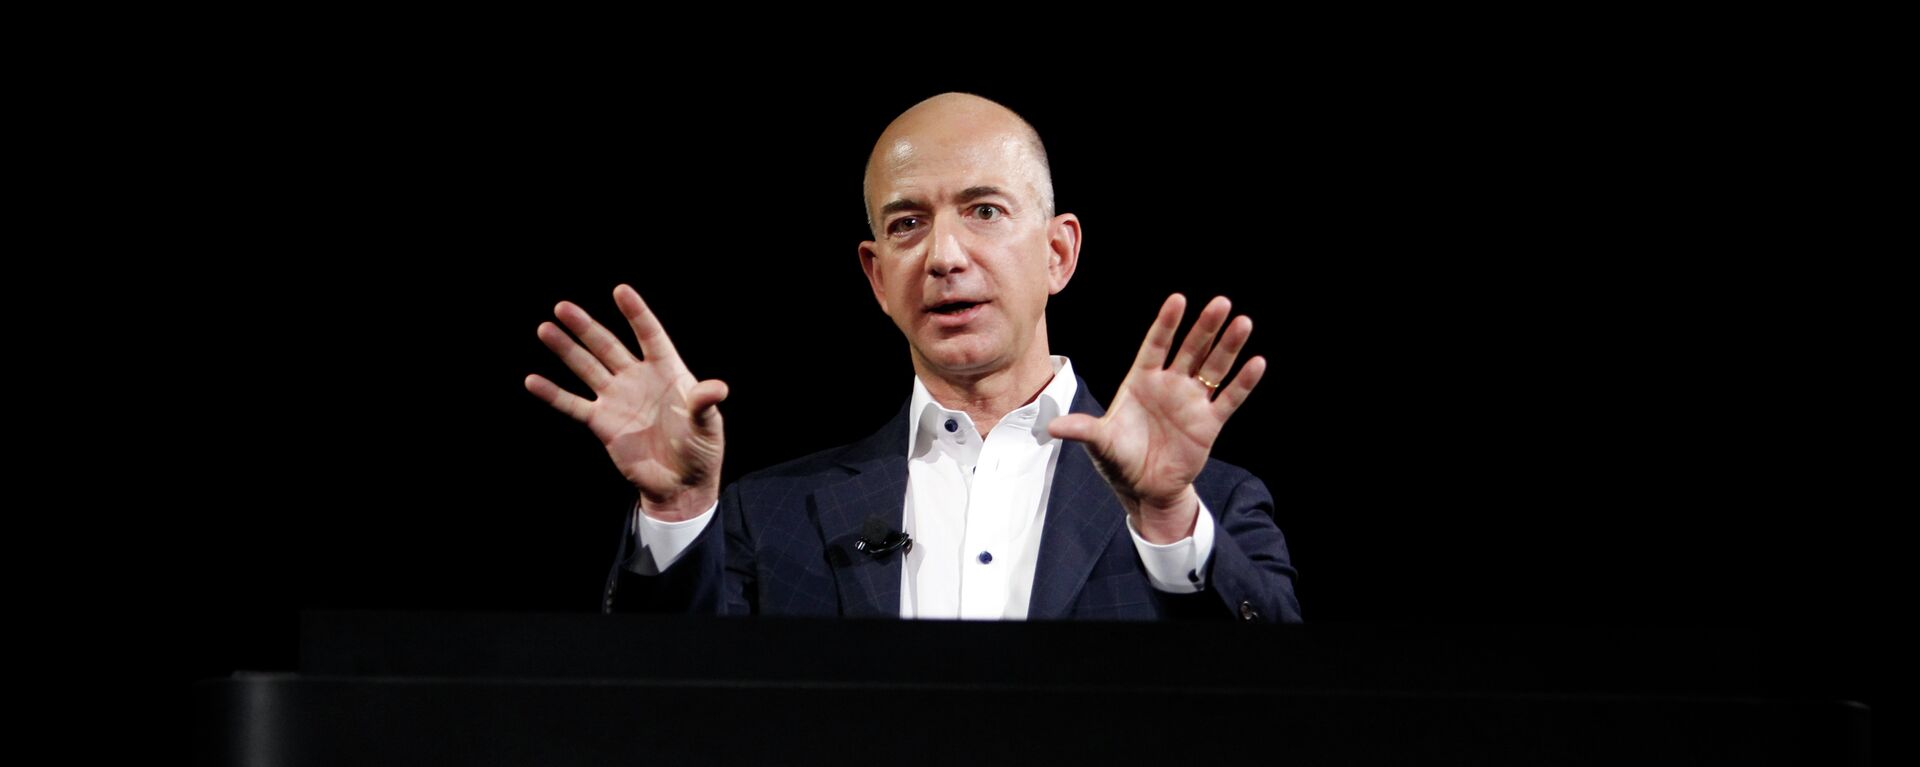 Jeff Bezos, fundador de Amazon - Sputnik Mundo, 1920, 06.07.2021